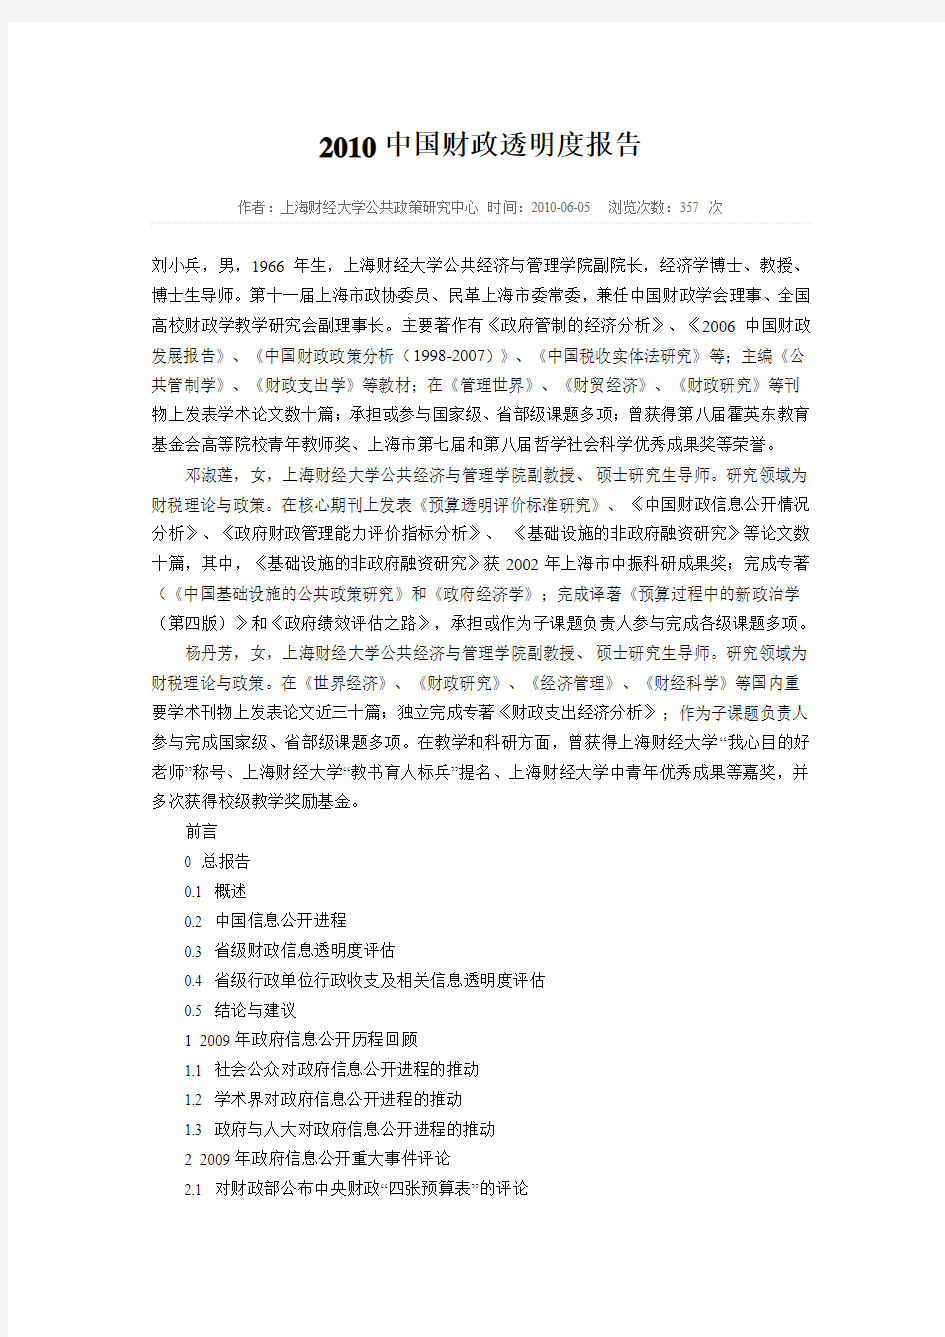 2010中国财政透明度报告